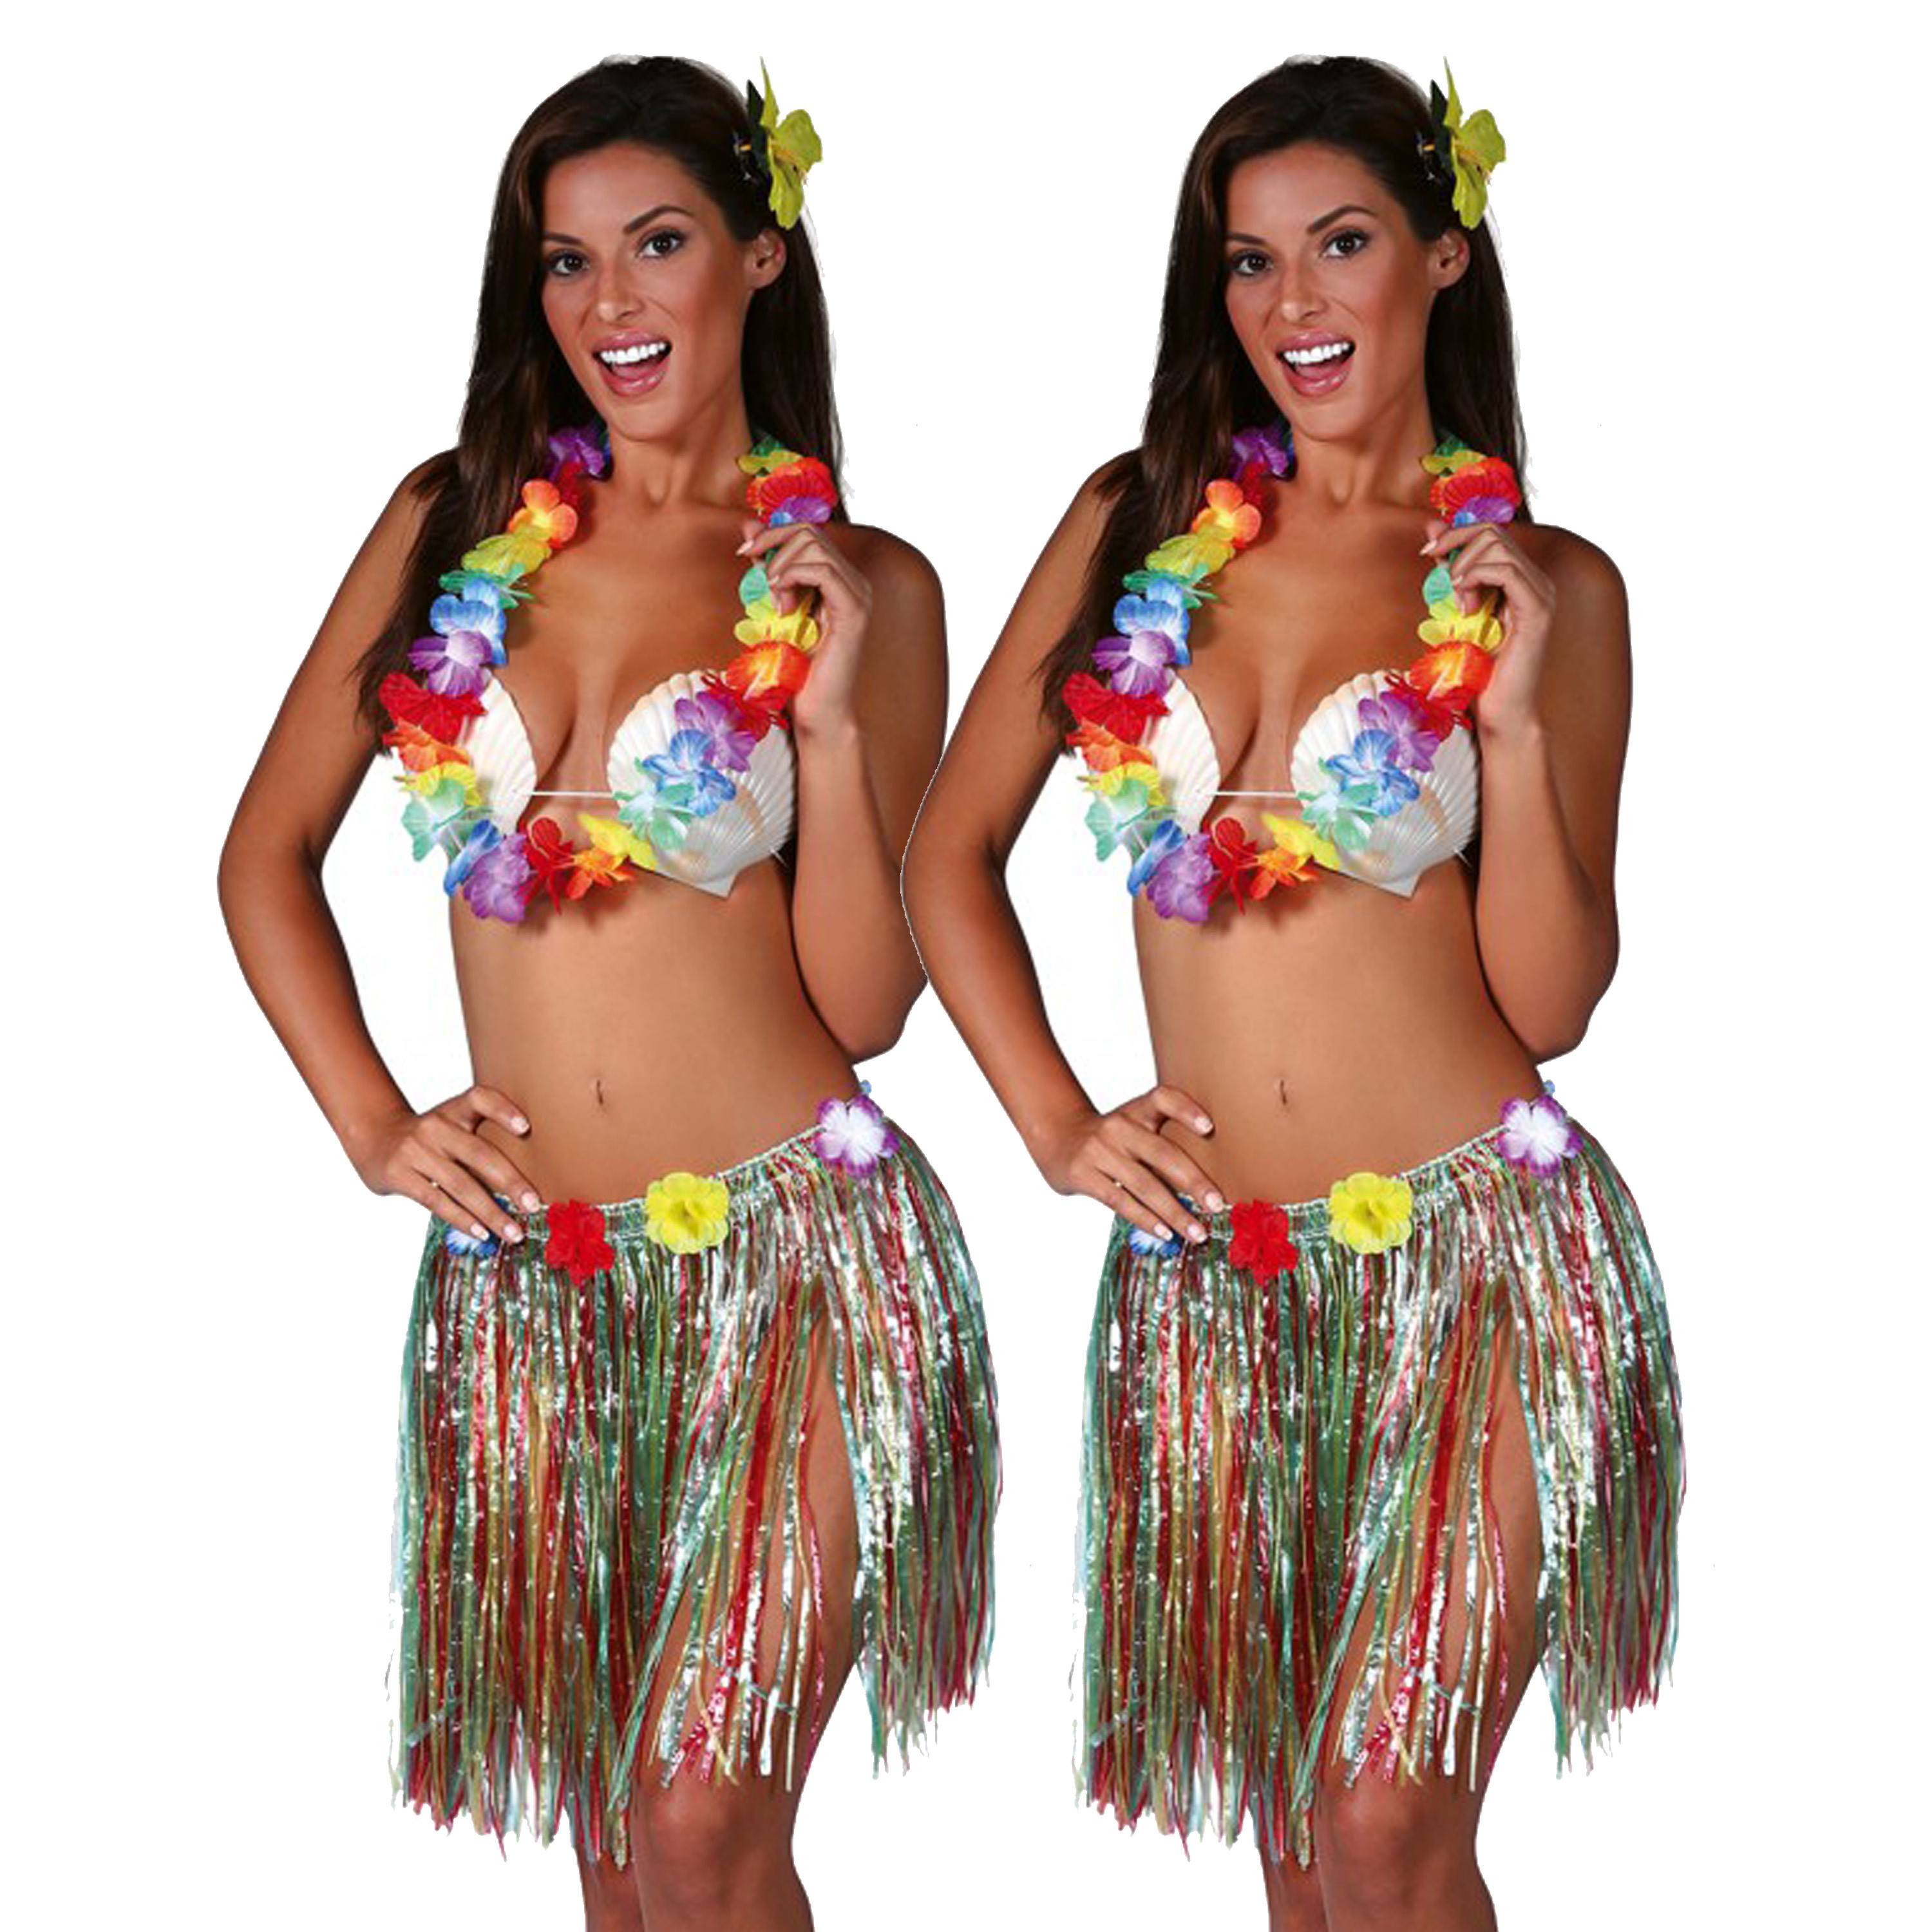 Hawaii verkleed set - 2x - voor volwassenen - multicolour - rieten rokje/bloemenkrans/haarclip bloem